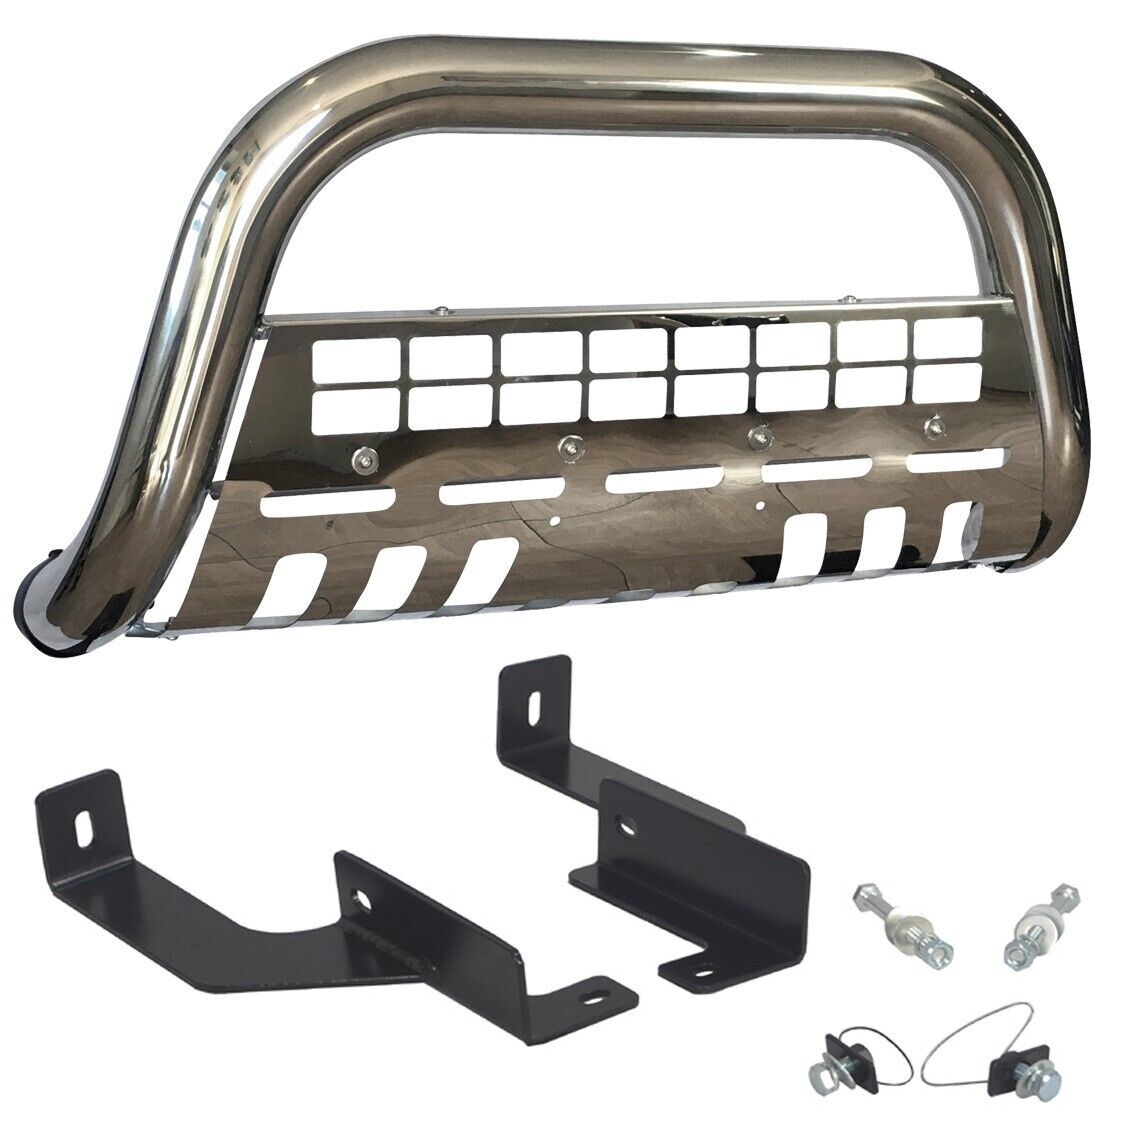 06-10 Ford Explorer 4DR / Sport Trac chrome Push Bull Bar in Stainless Steel